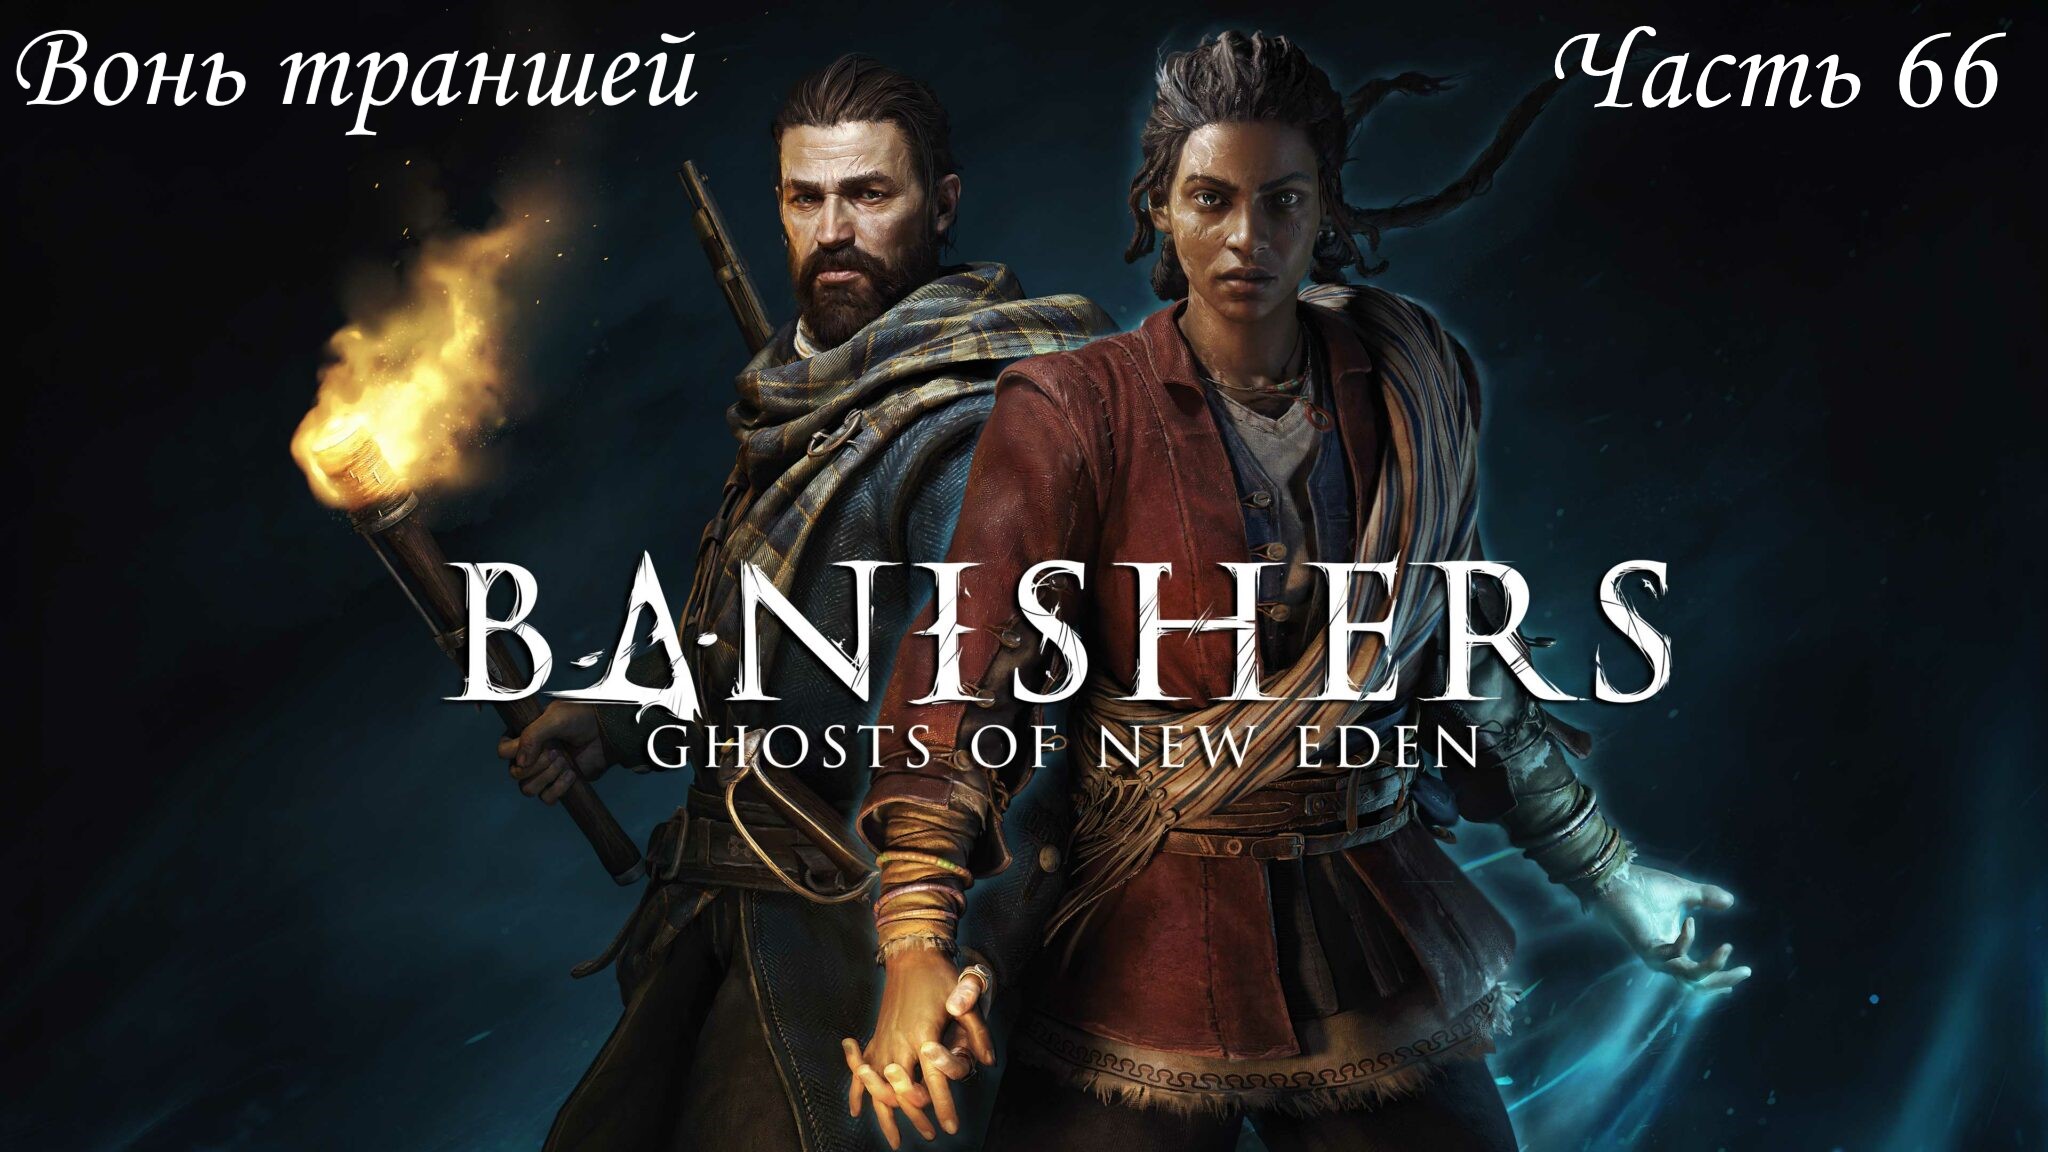 Прохождение Banishers: Ghosts of New Eden на русском - Часть 66. Вонь траншей